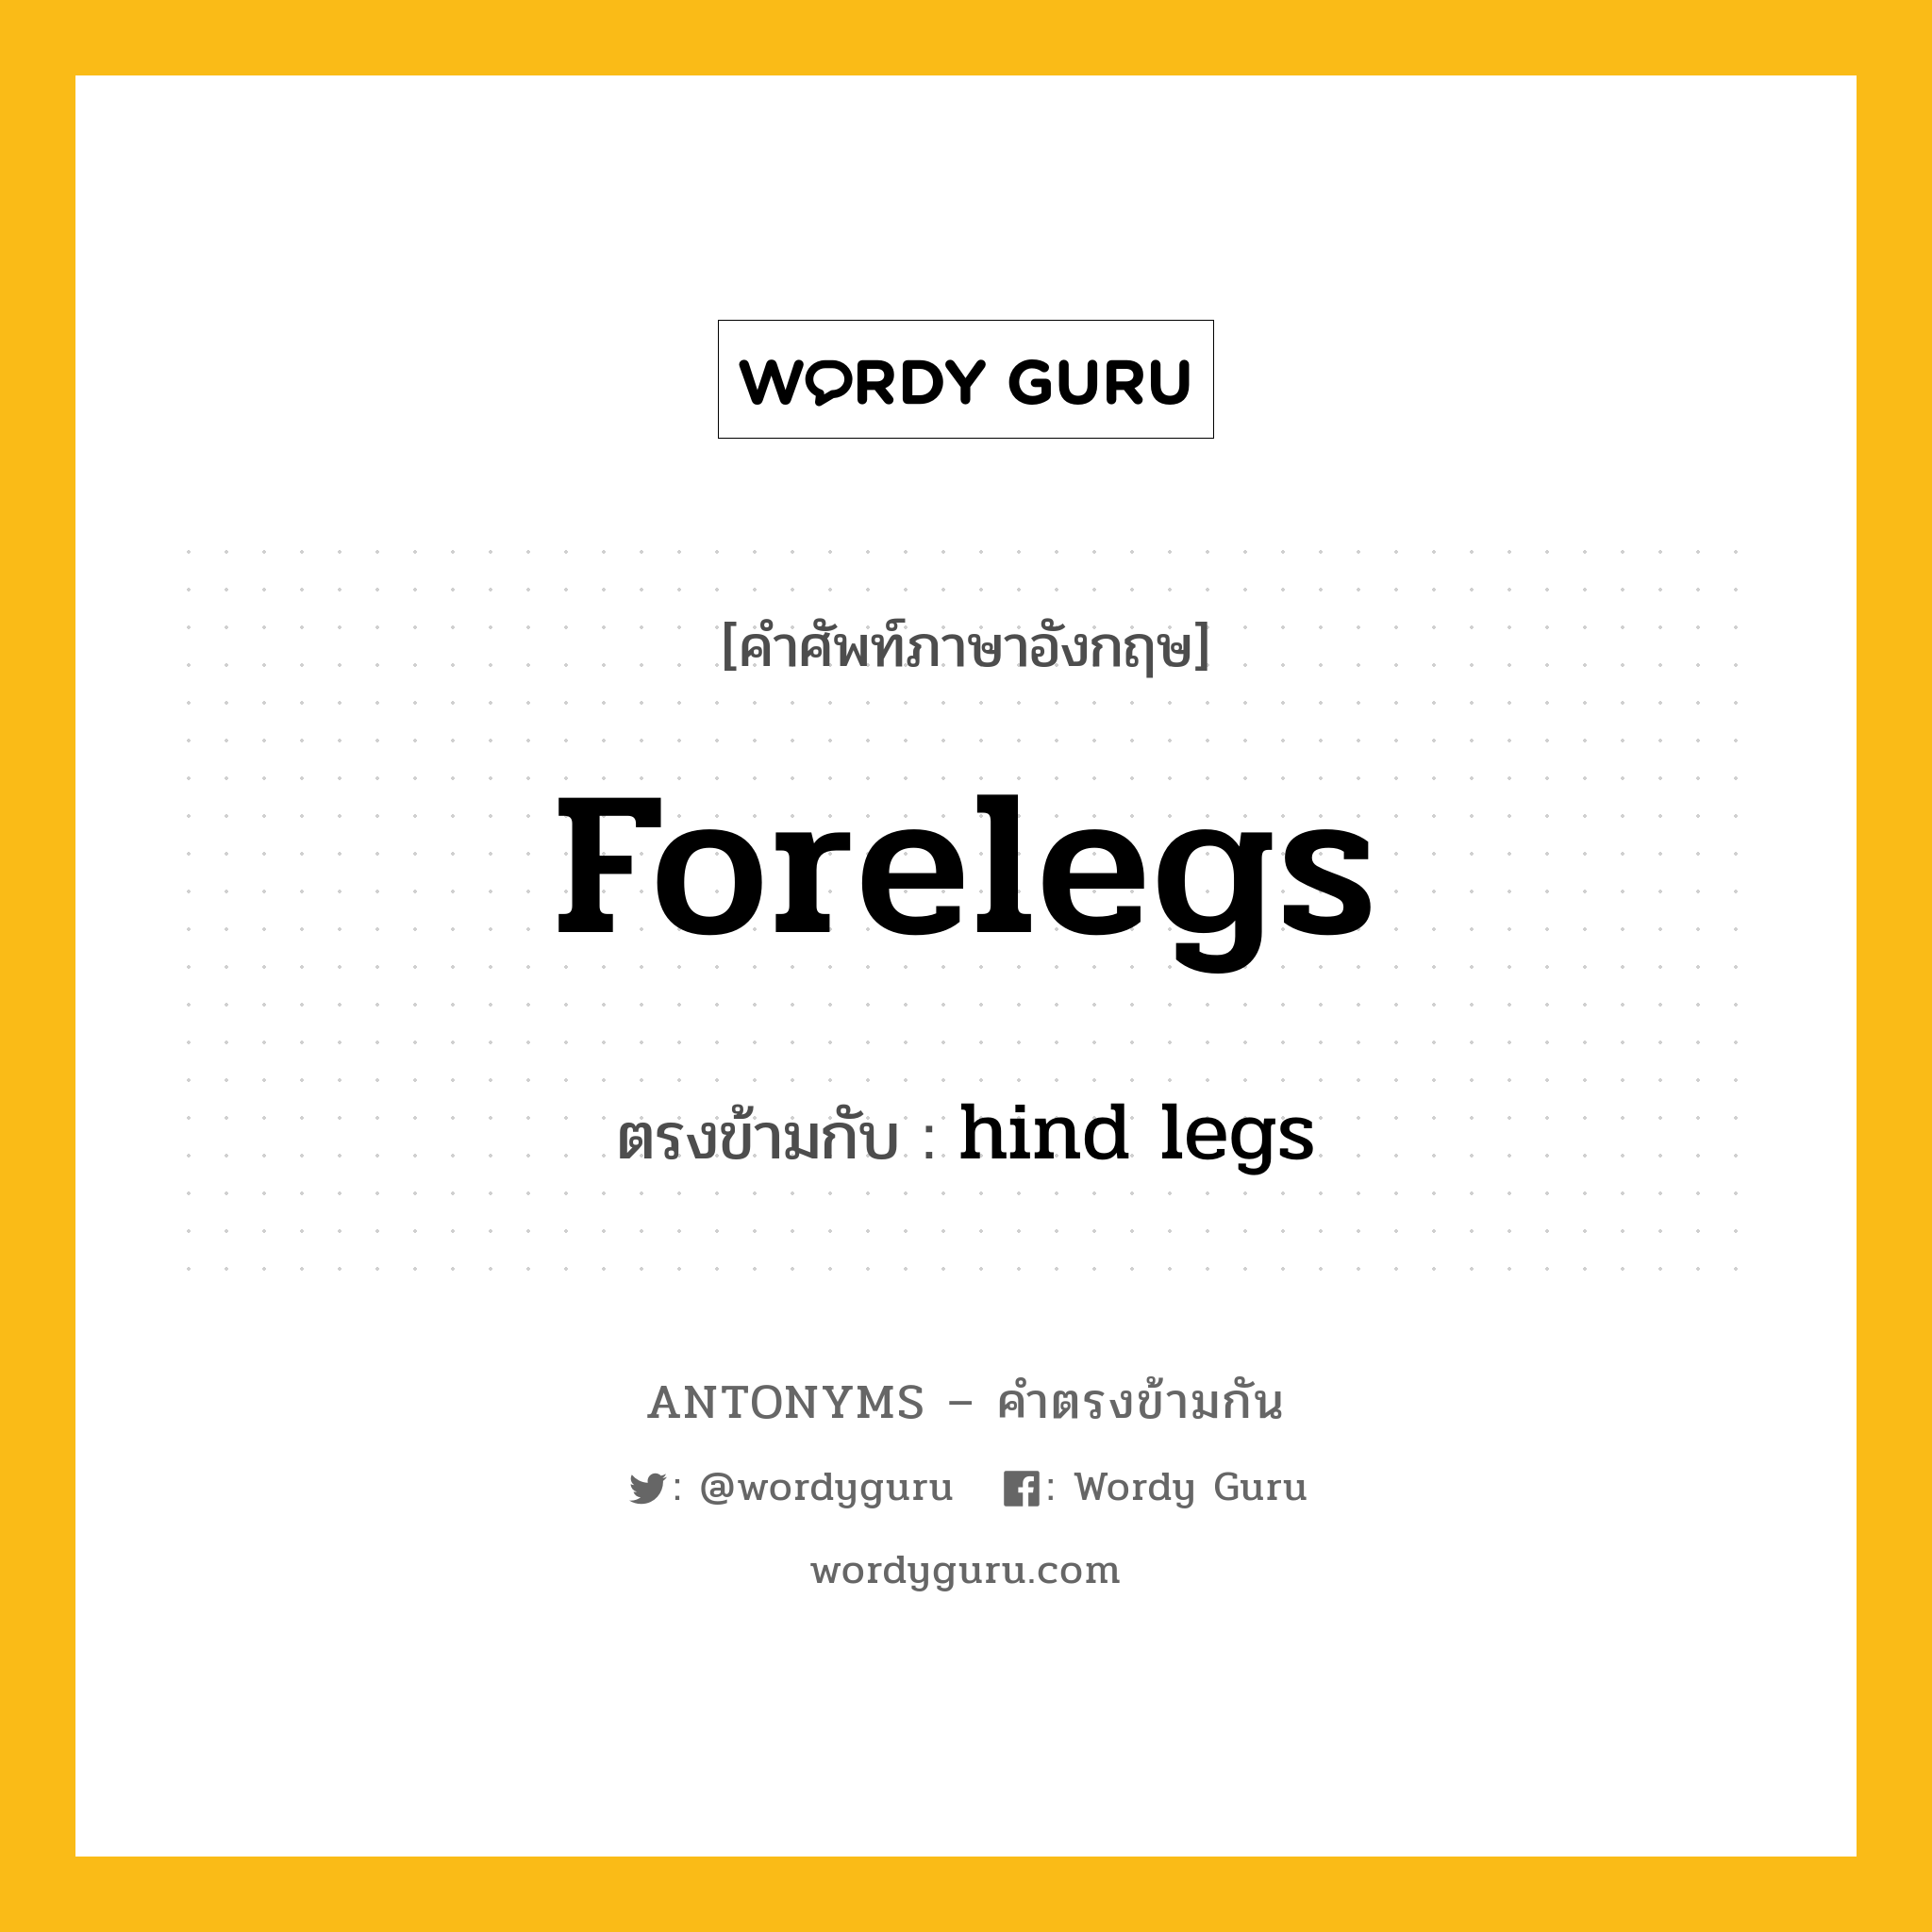 forelegs เป็นคำตรงข้ามกับคำไหนบ้าง?, คำศัพท์ภาษาอังกฤษ forelegs ตรงข้ามกับ hind legs หมวด hind legs